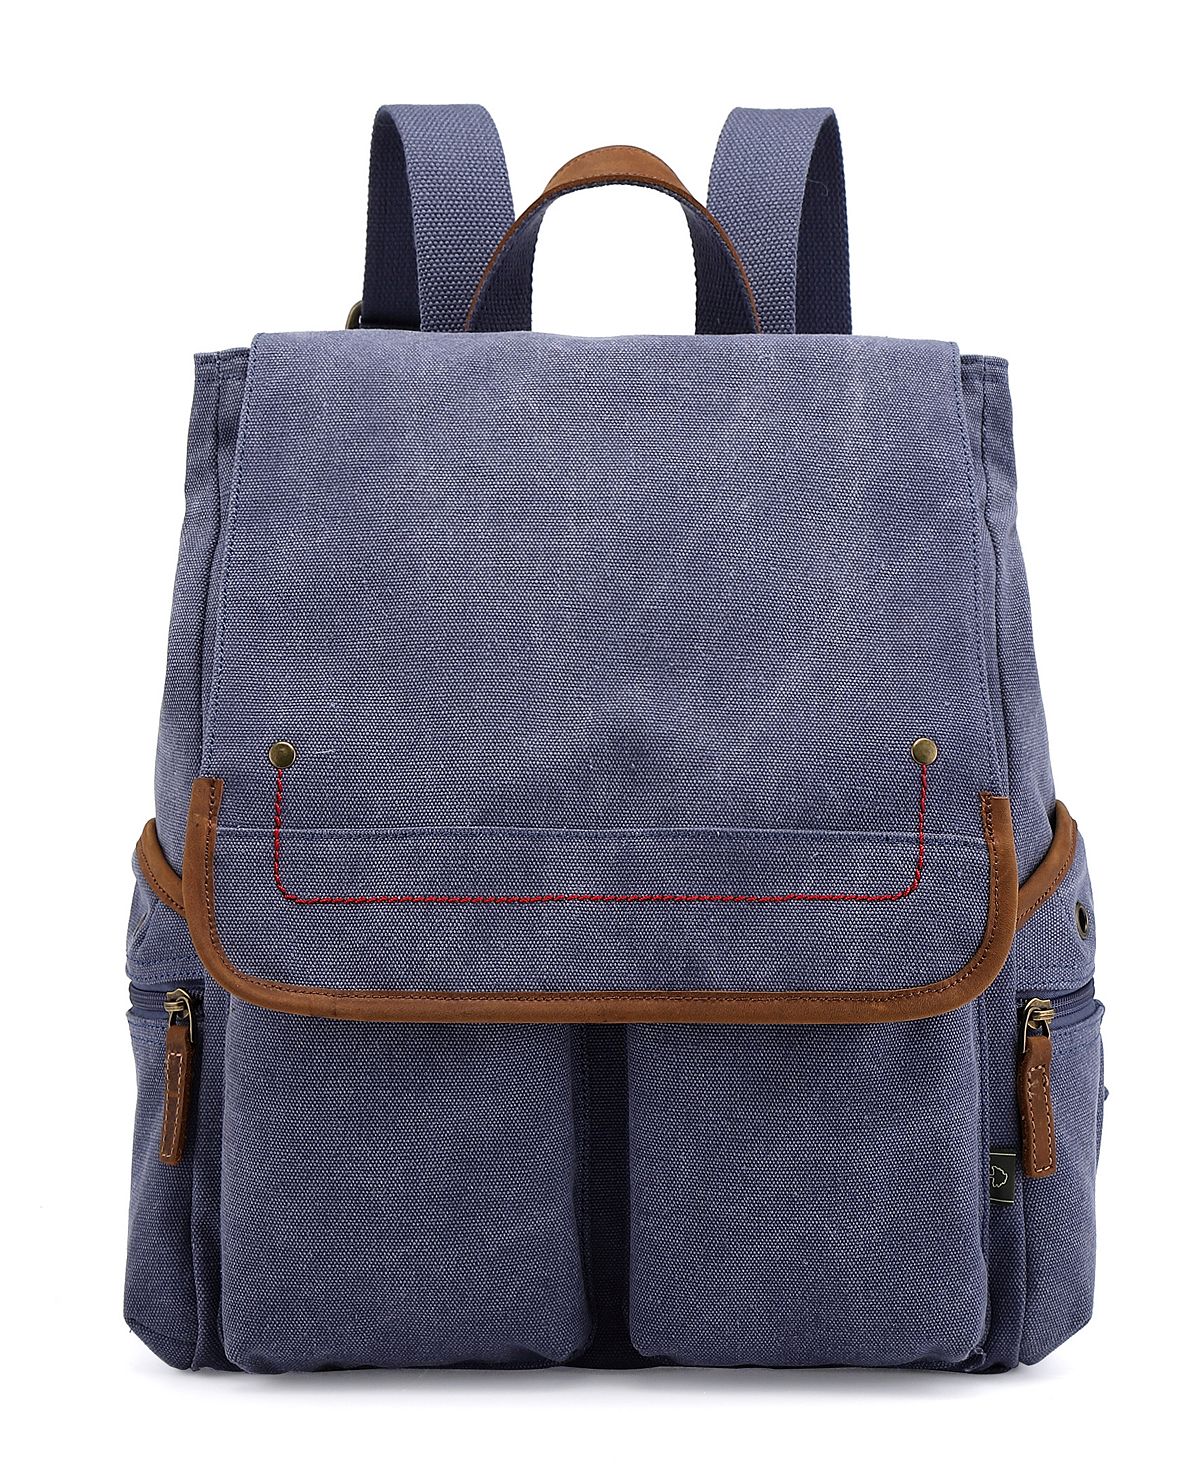 Холщовый рюкзак Atona TSD BRAND, синий